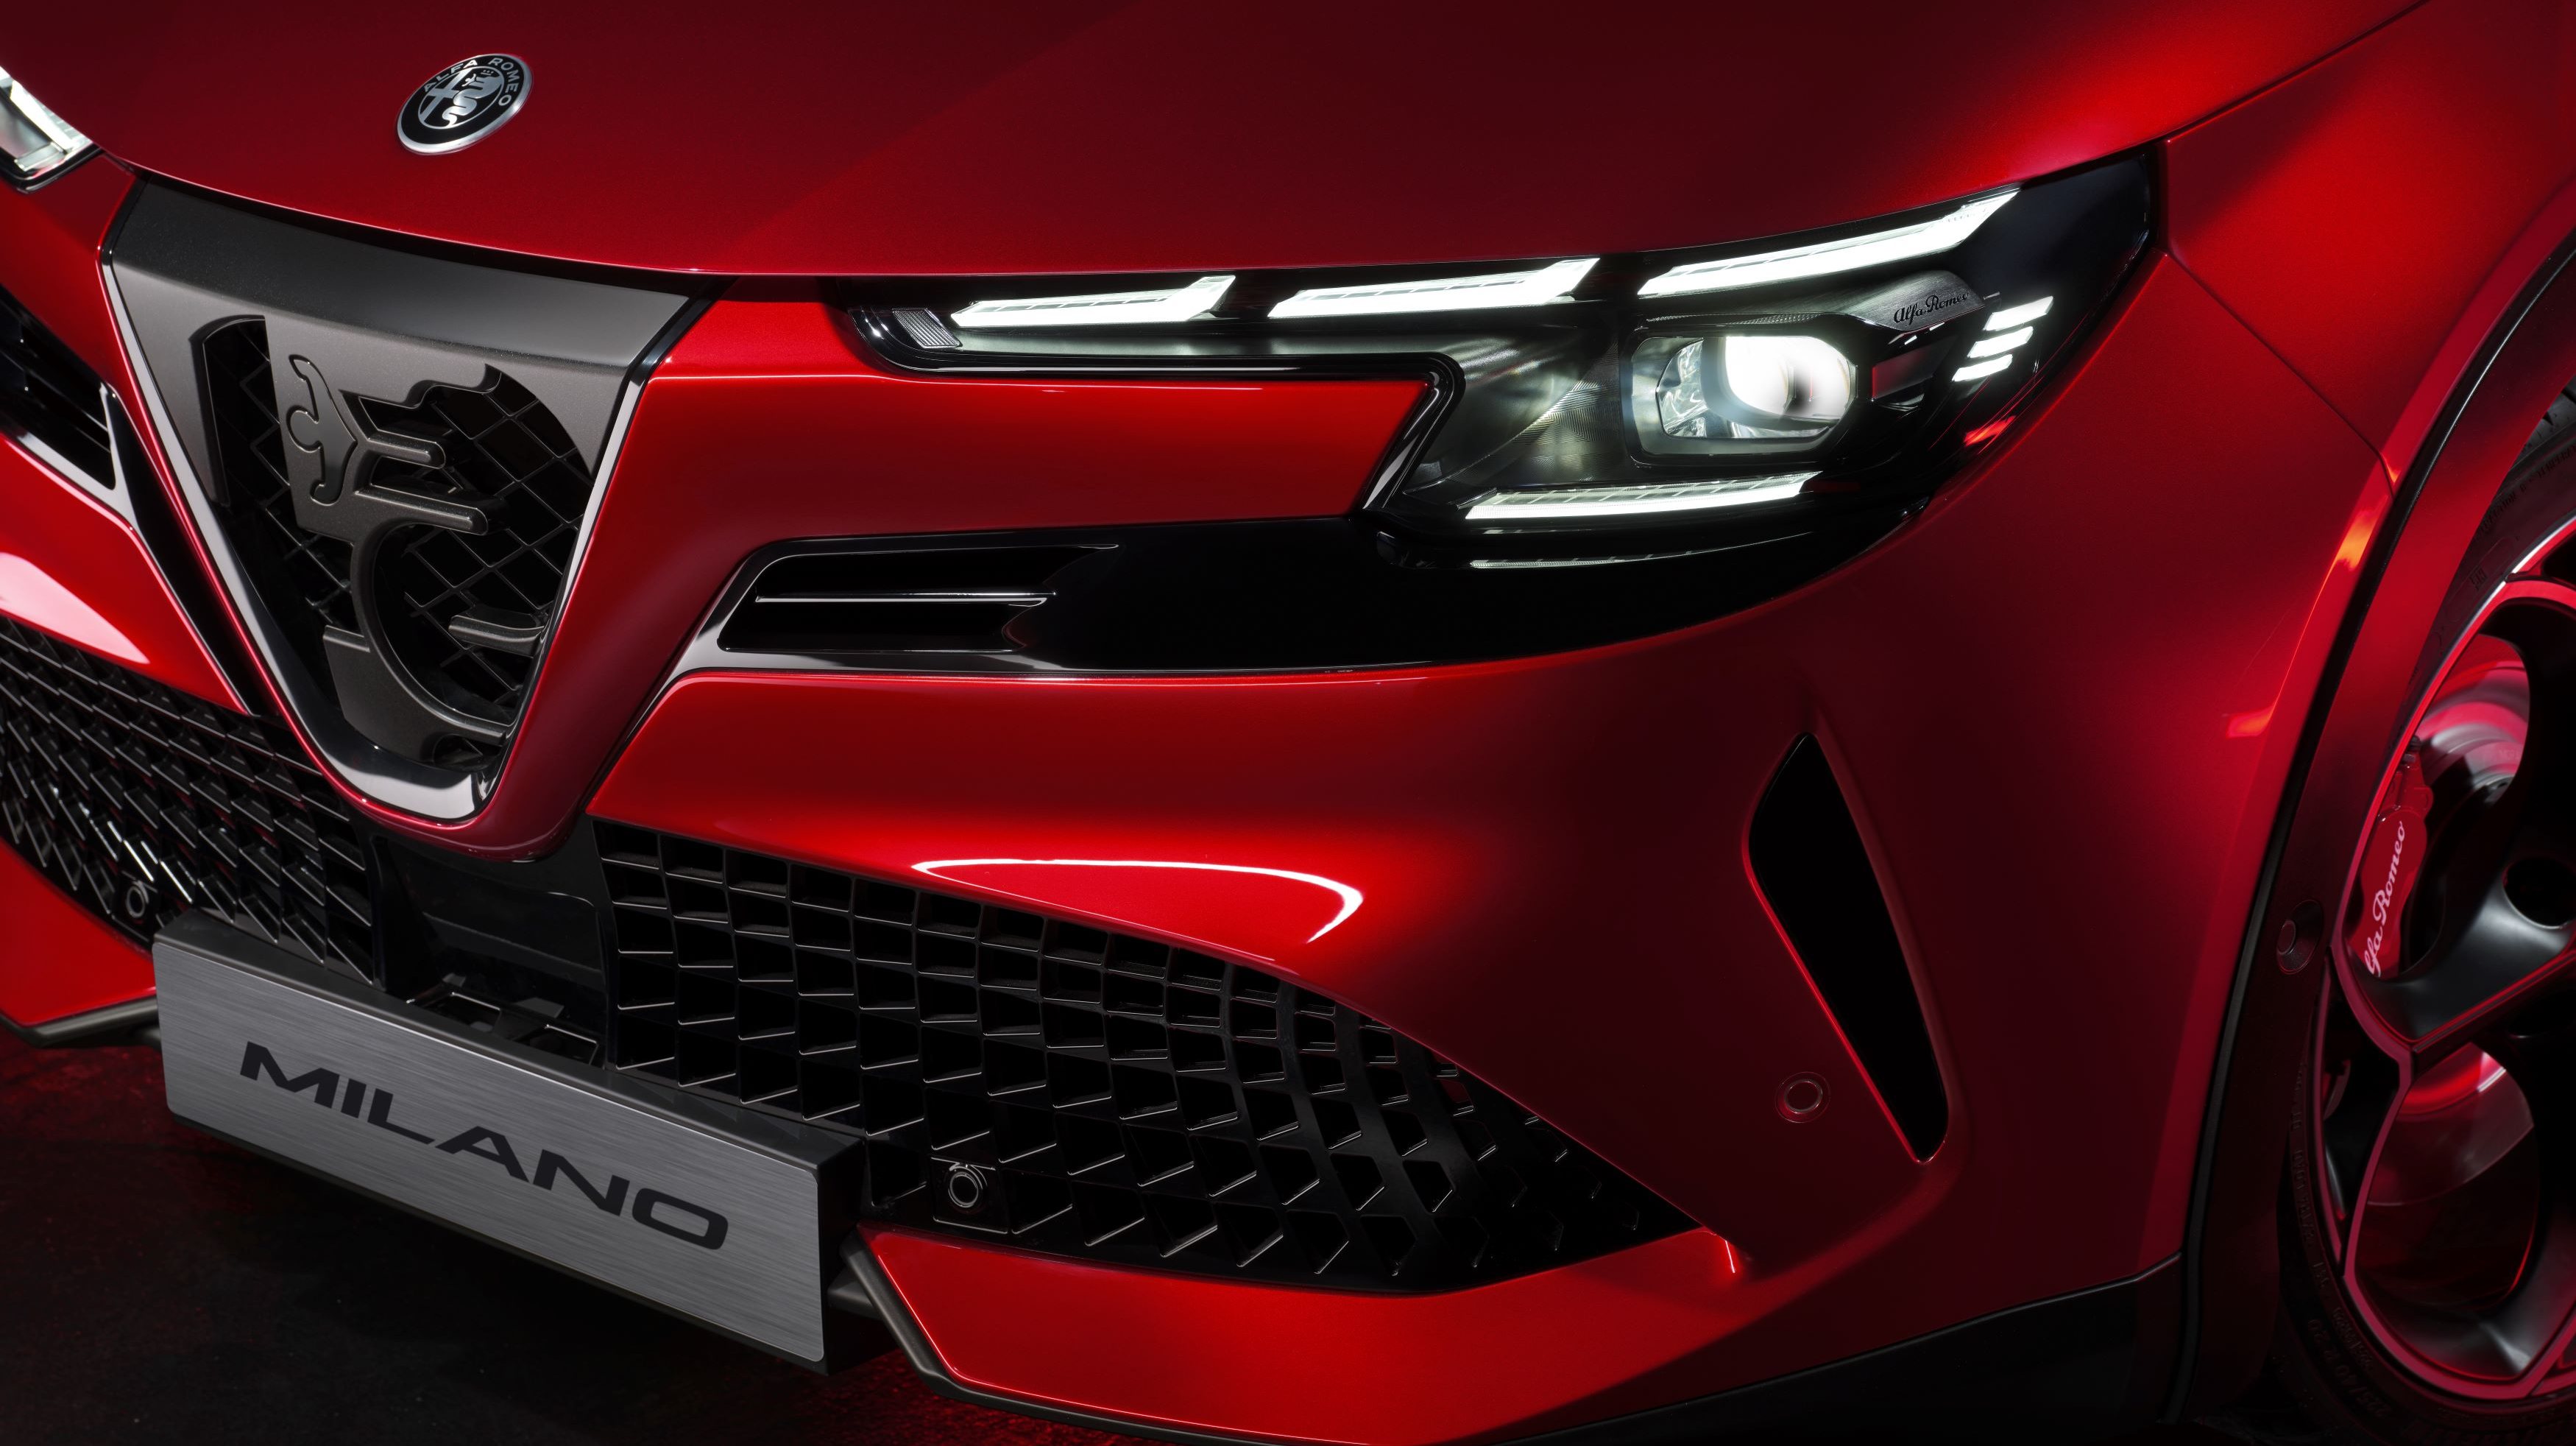 O B-SUV da Alfa Romeo será produzido na Polónia e não em Itália, pelo que o ministro Adolfo Urso esgrimiu o argumento da ideia &quot;enganadora&quot; que é passada aos consumidores para o impedir de se chamar Milano (Milão)...